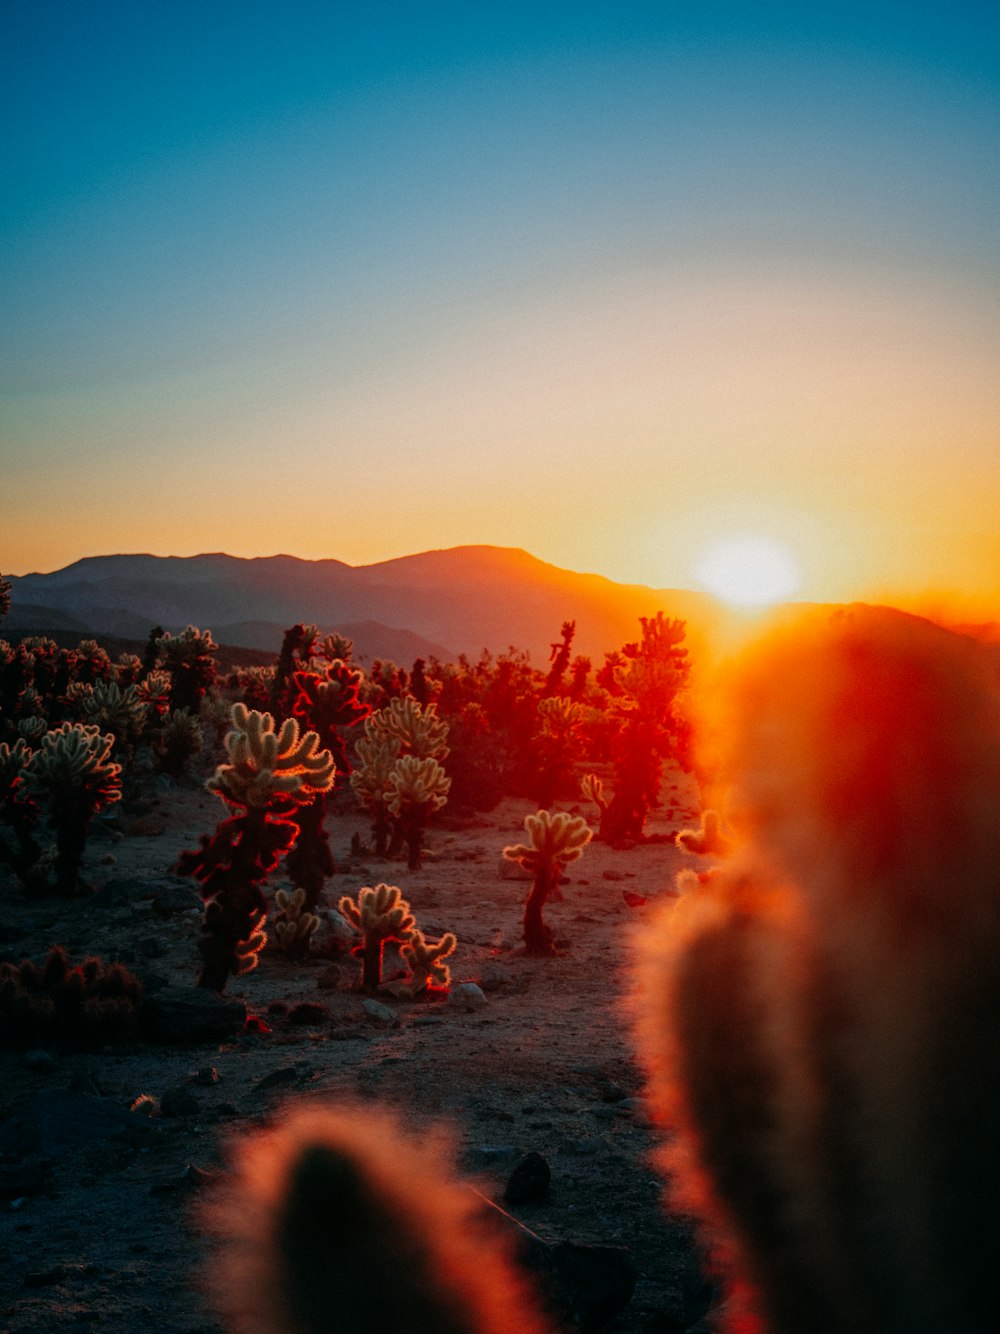 El sol se está poniendo sobre un desierto con cactus